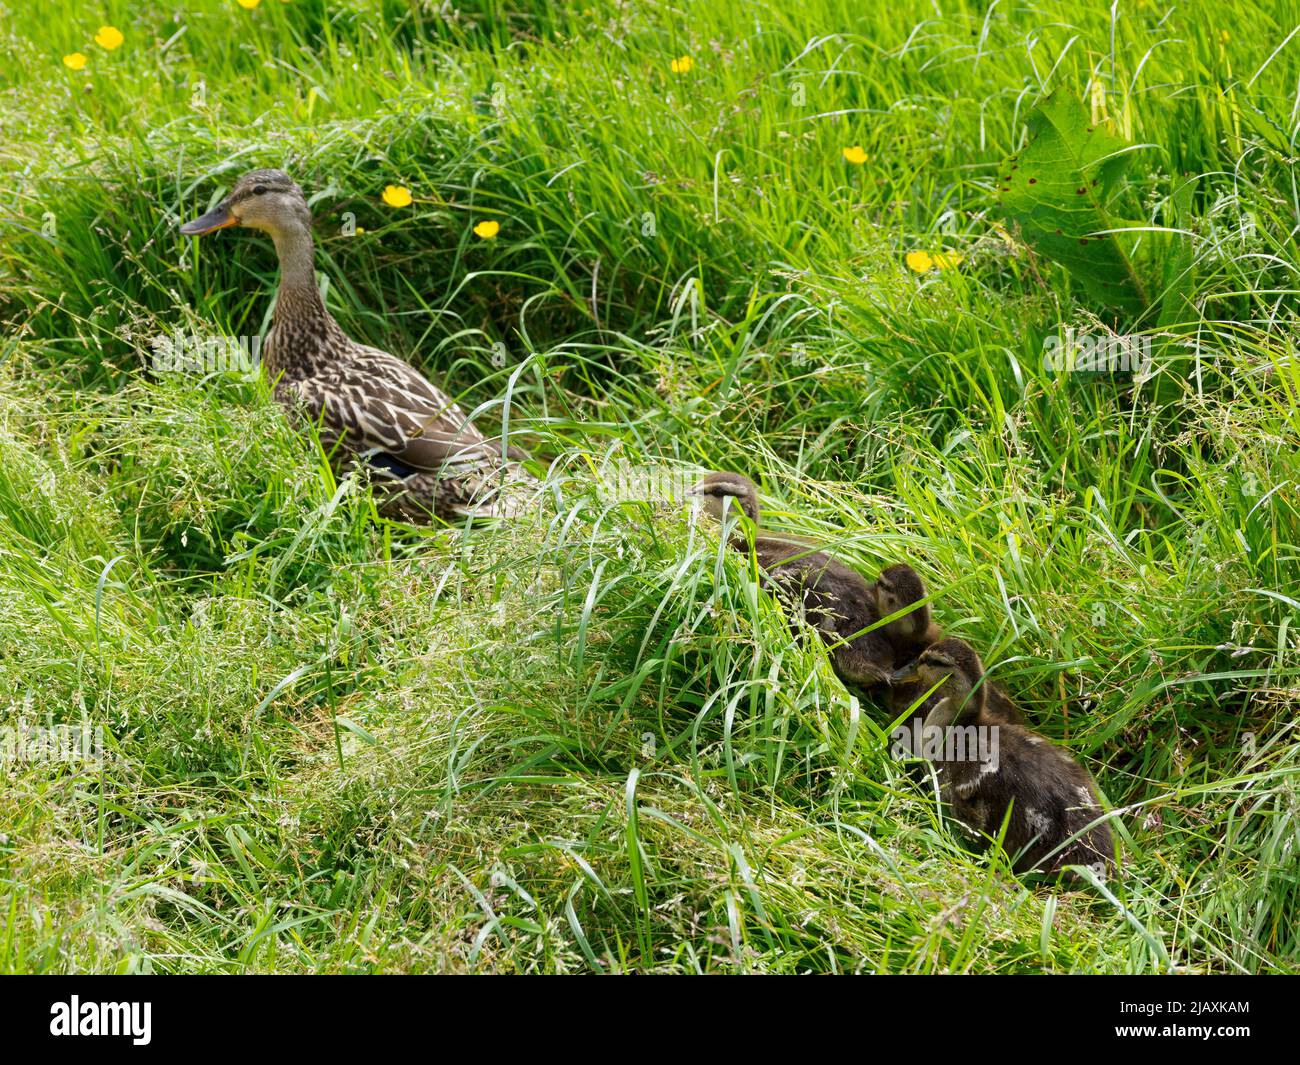 Anas platyrhynchos, femelle canard colvert menant des conduits à travers la longue herbe, Royaume-Uni Banque D'Images